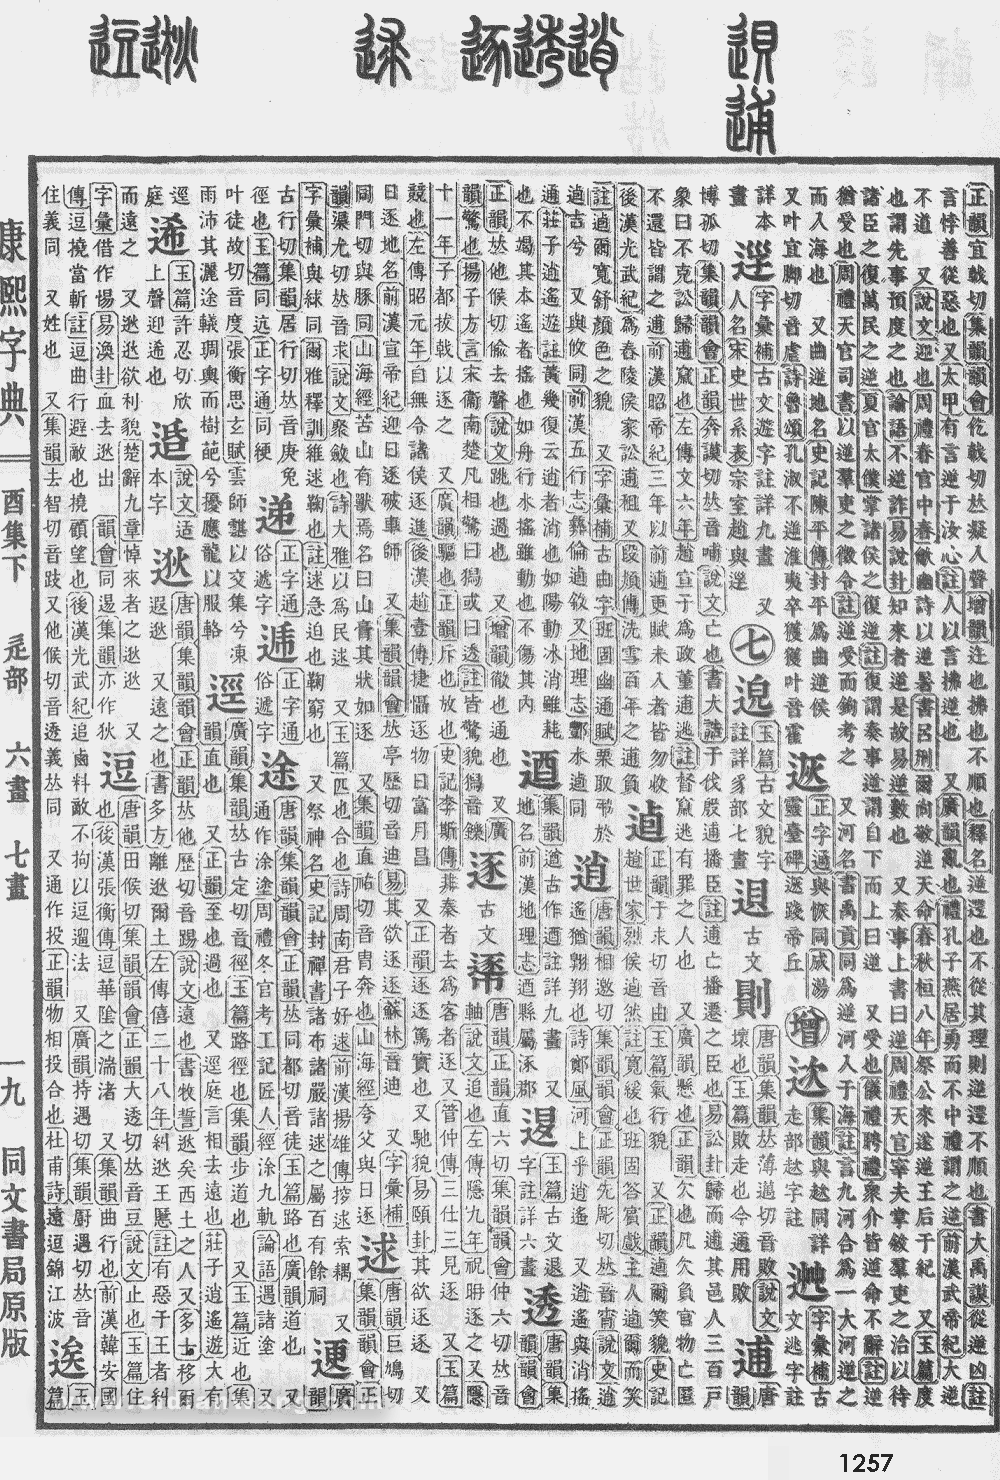 康熙字典掃描版第1257頁